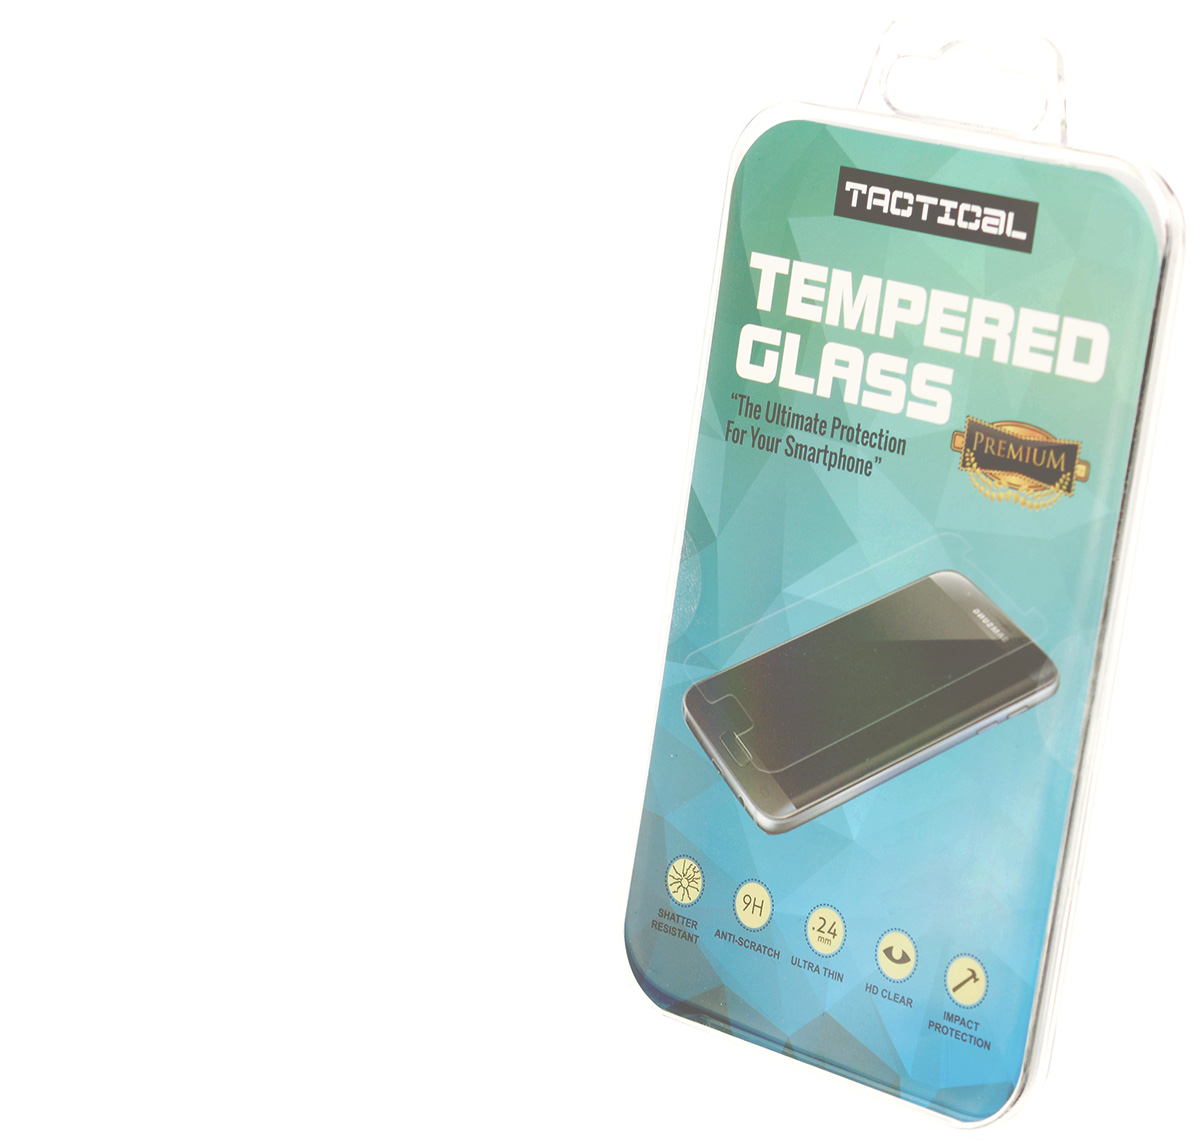 Tactical Tempered Glass ochranné tvrzené sklo na kompletní displej pro Xiaomi Redmi 6, Redmi 6A